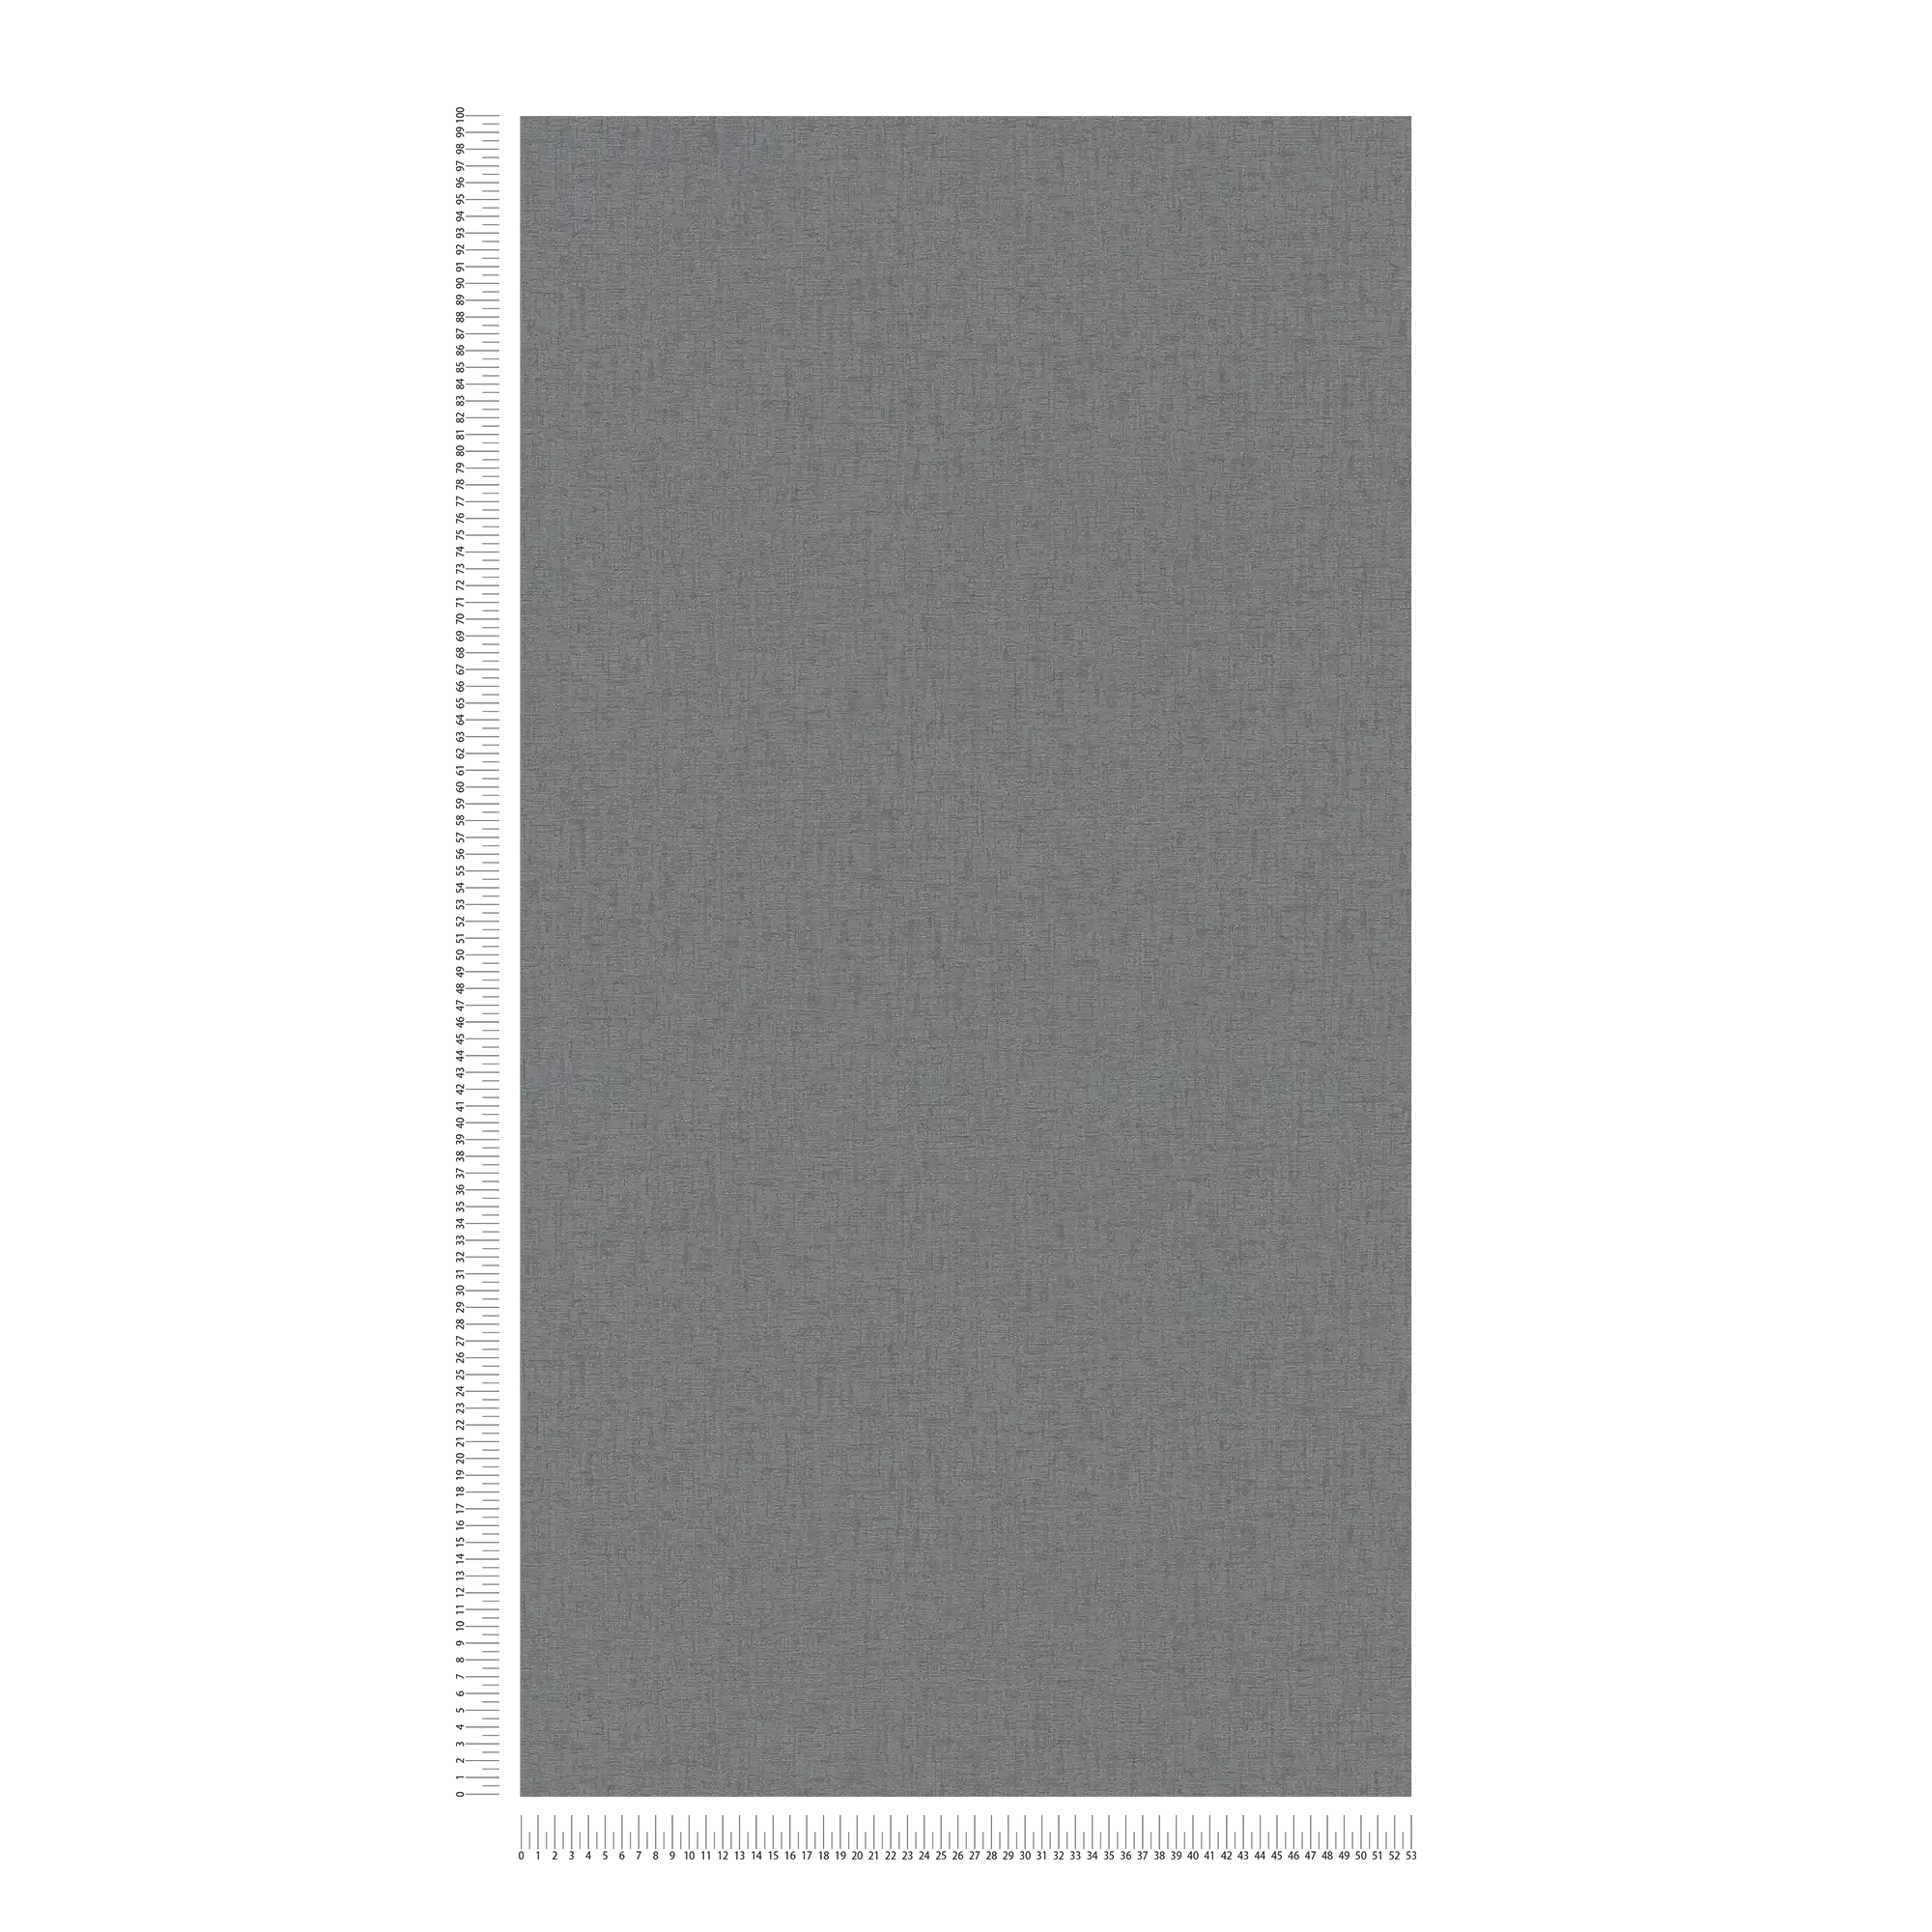             papier peint en papier intissé uni avec structure textile - anthracite, gris
        